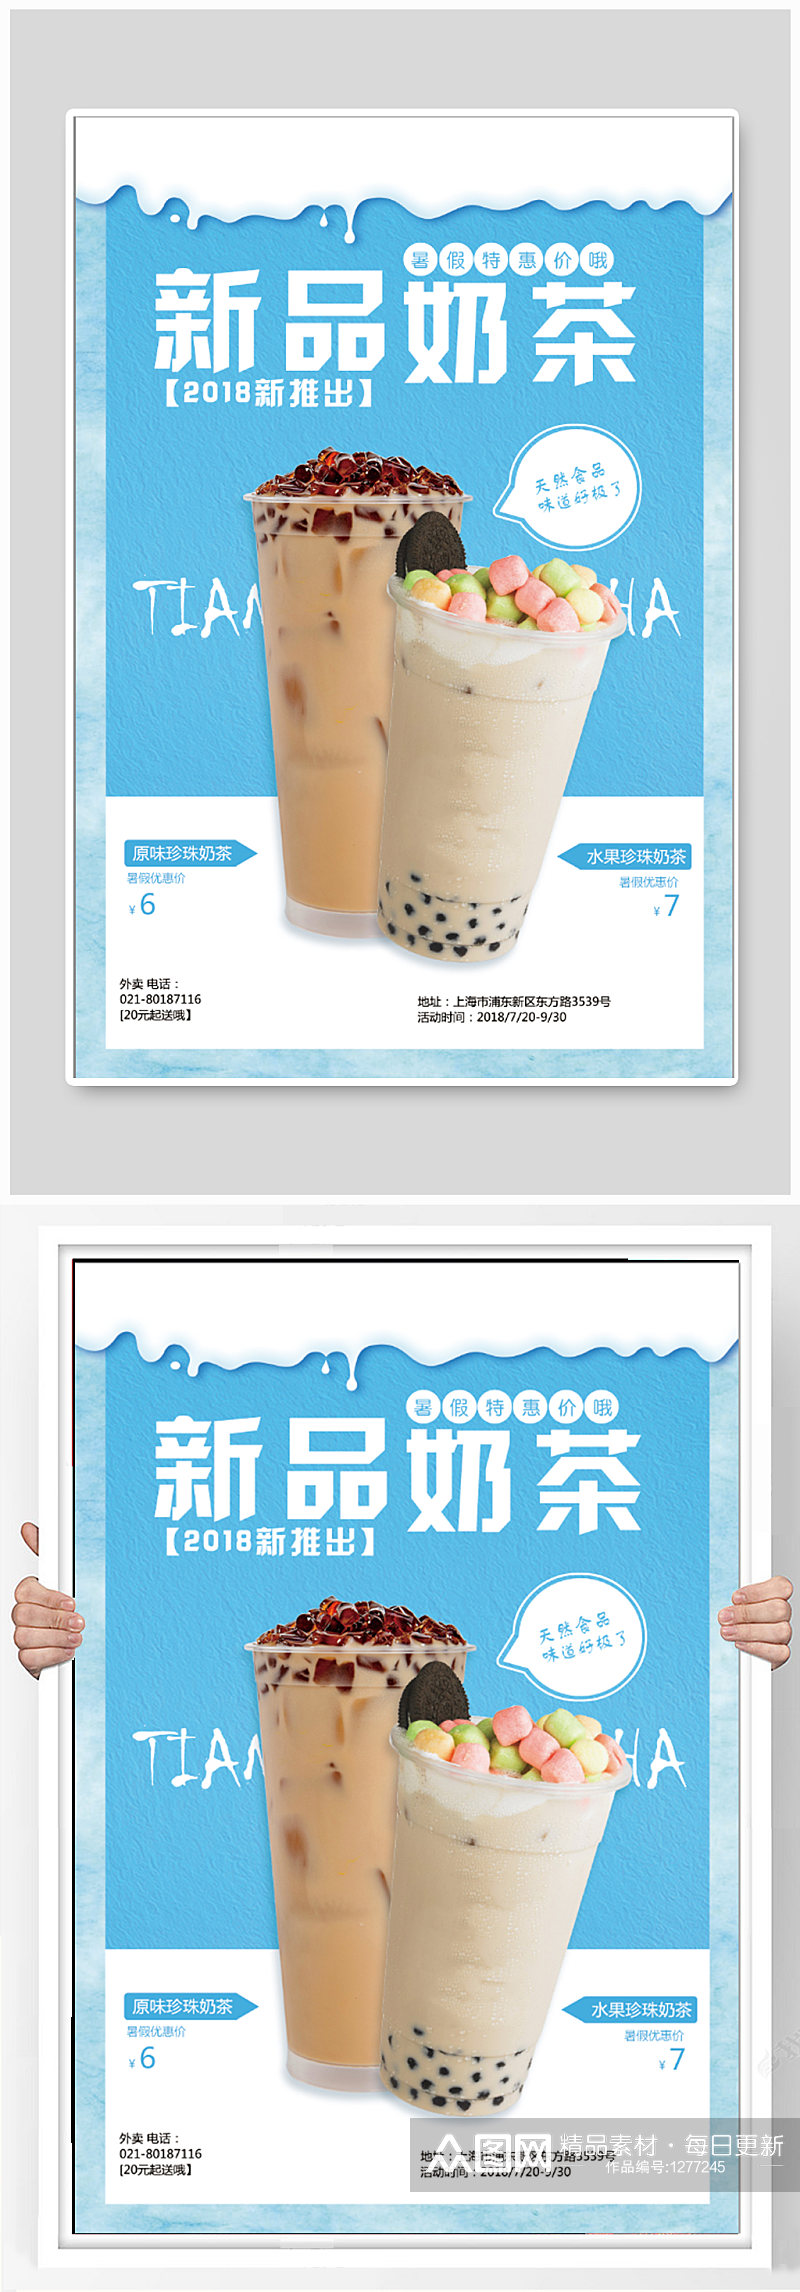 新品奶茶饮品促销海报素材